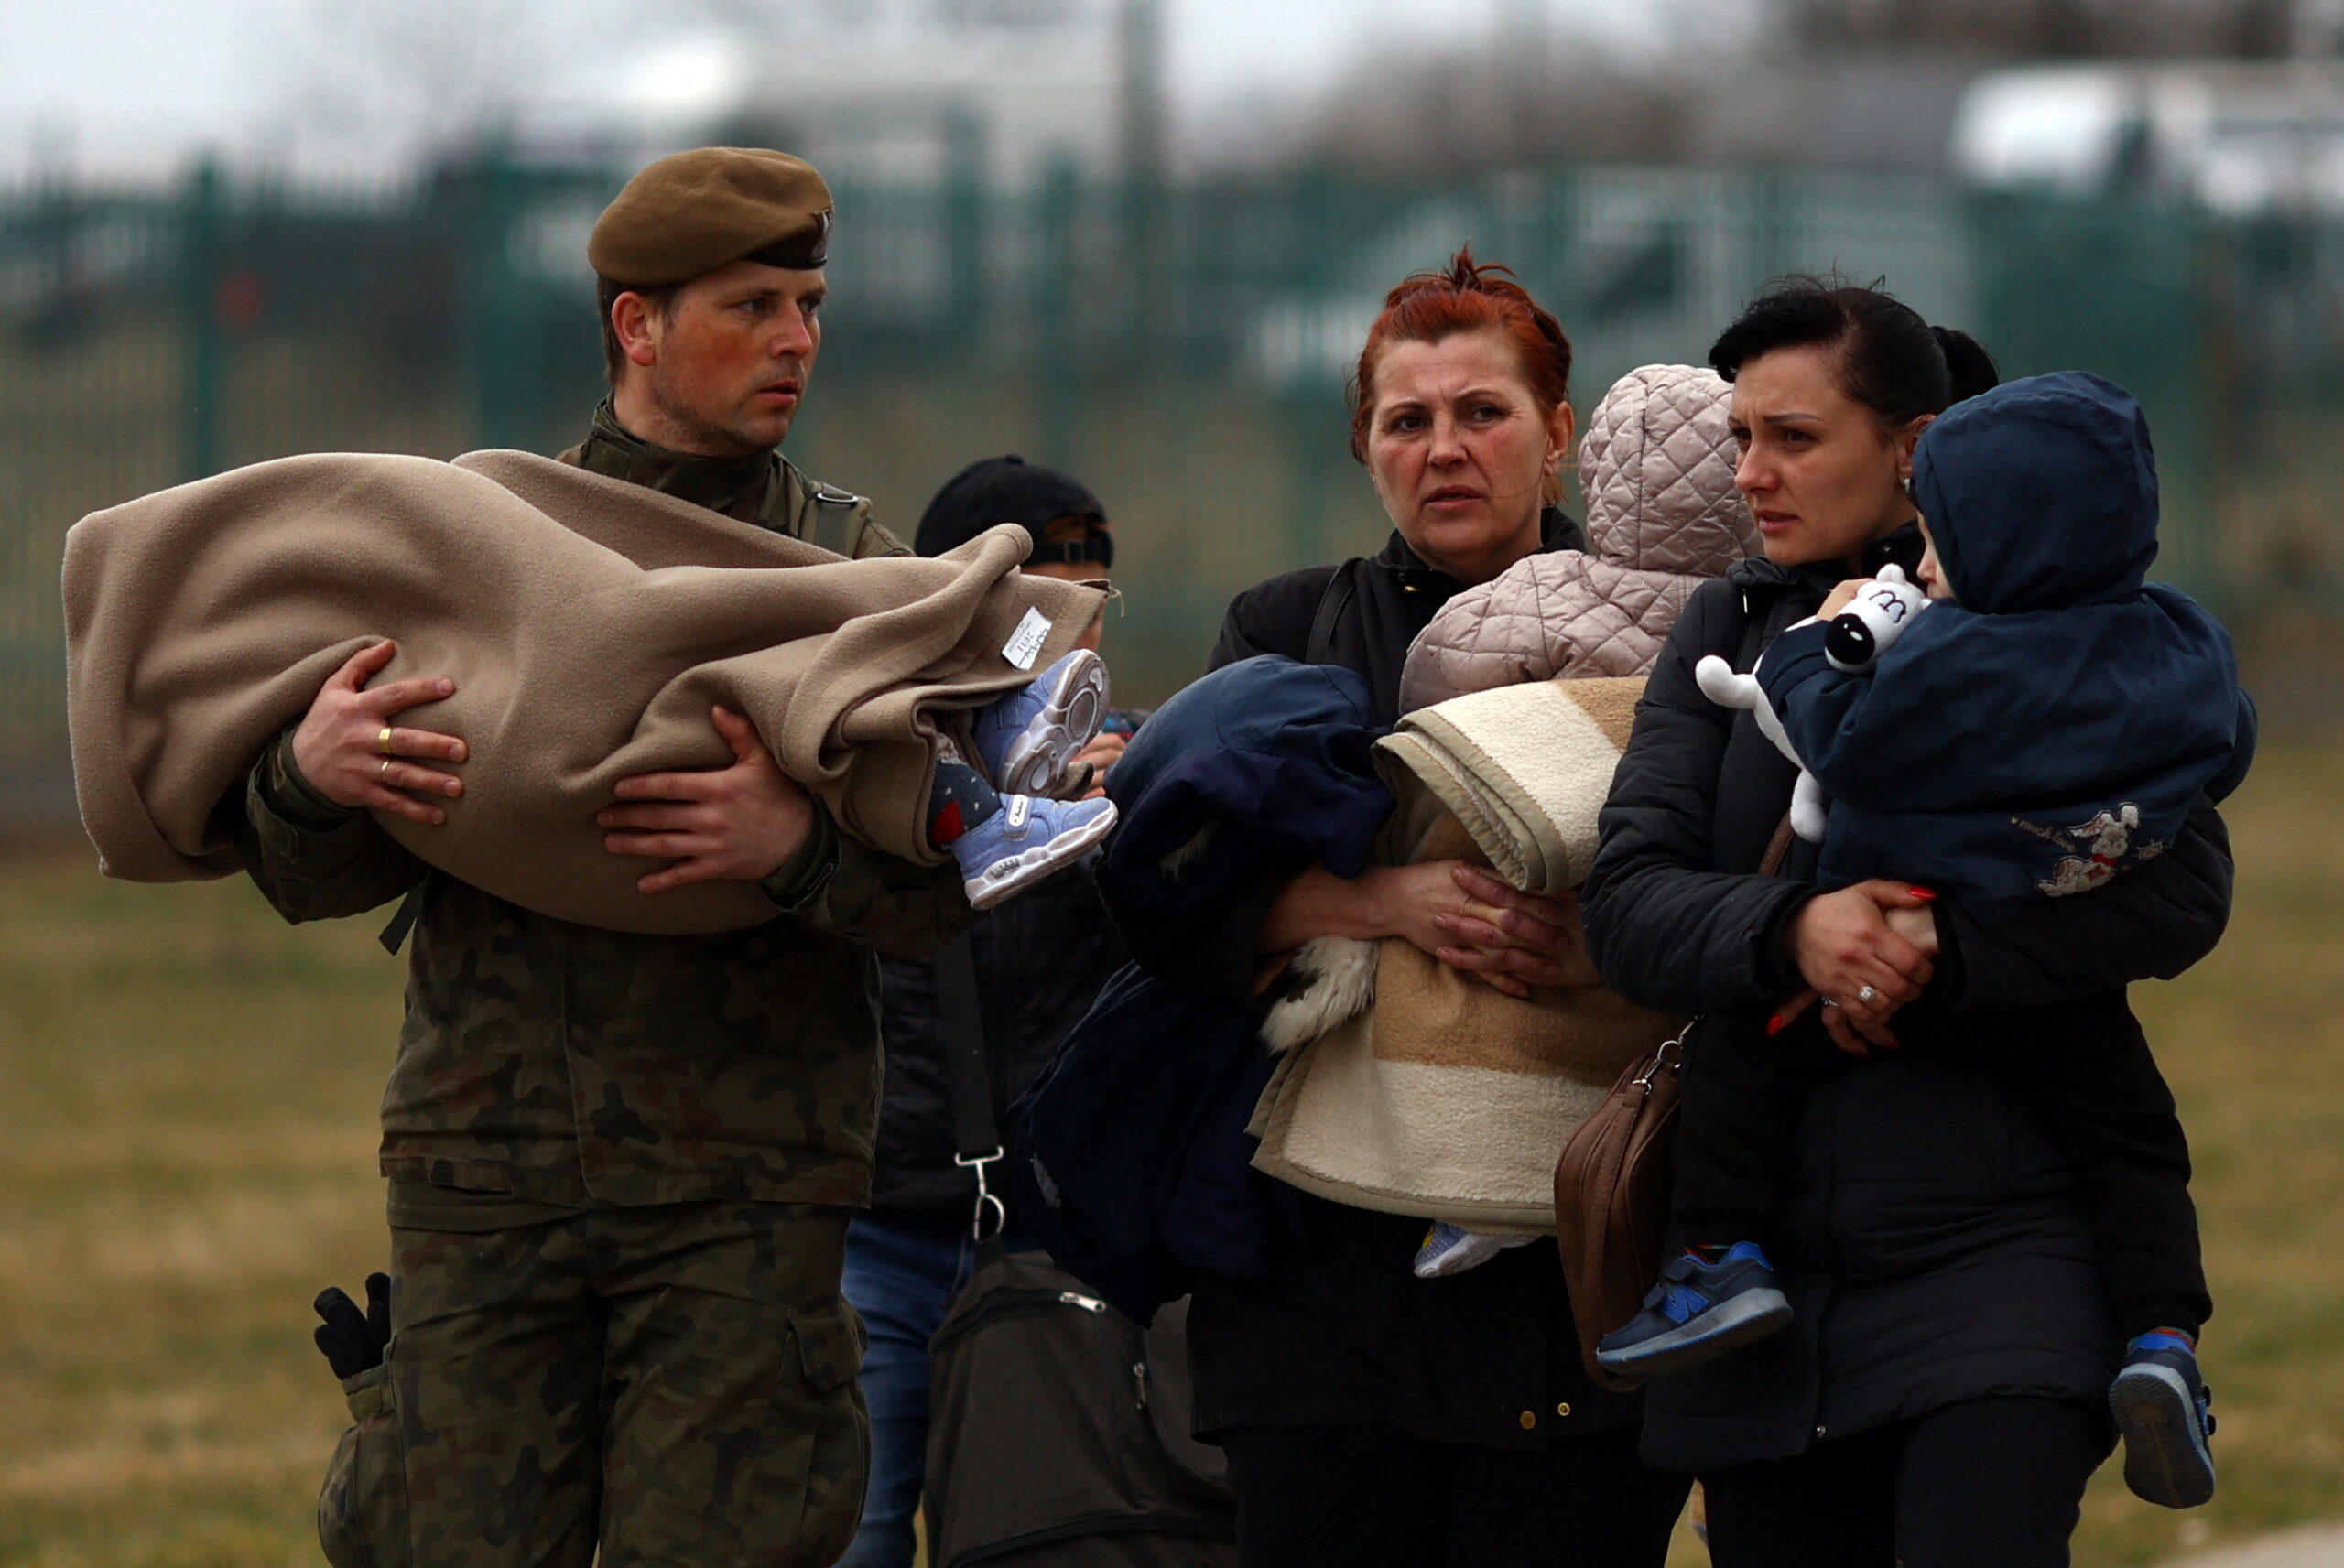 Польский солдат несет ребенка при пересечении границы украинскими беженцами в Медыке. Польша. 26 марта 2022 года. Фото Hannah McKay/REUTERS/Scanpix/LETA